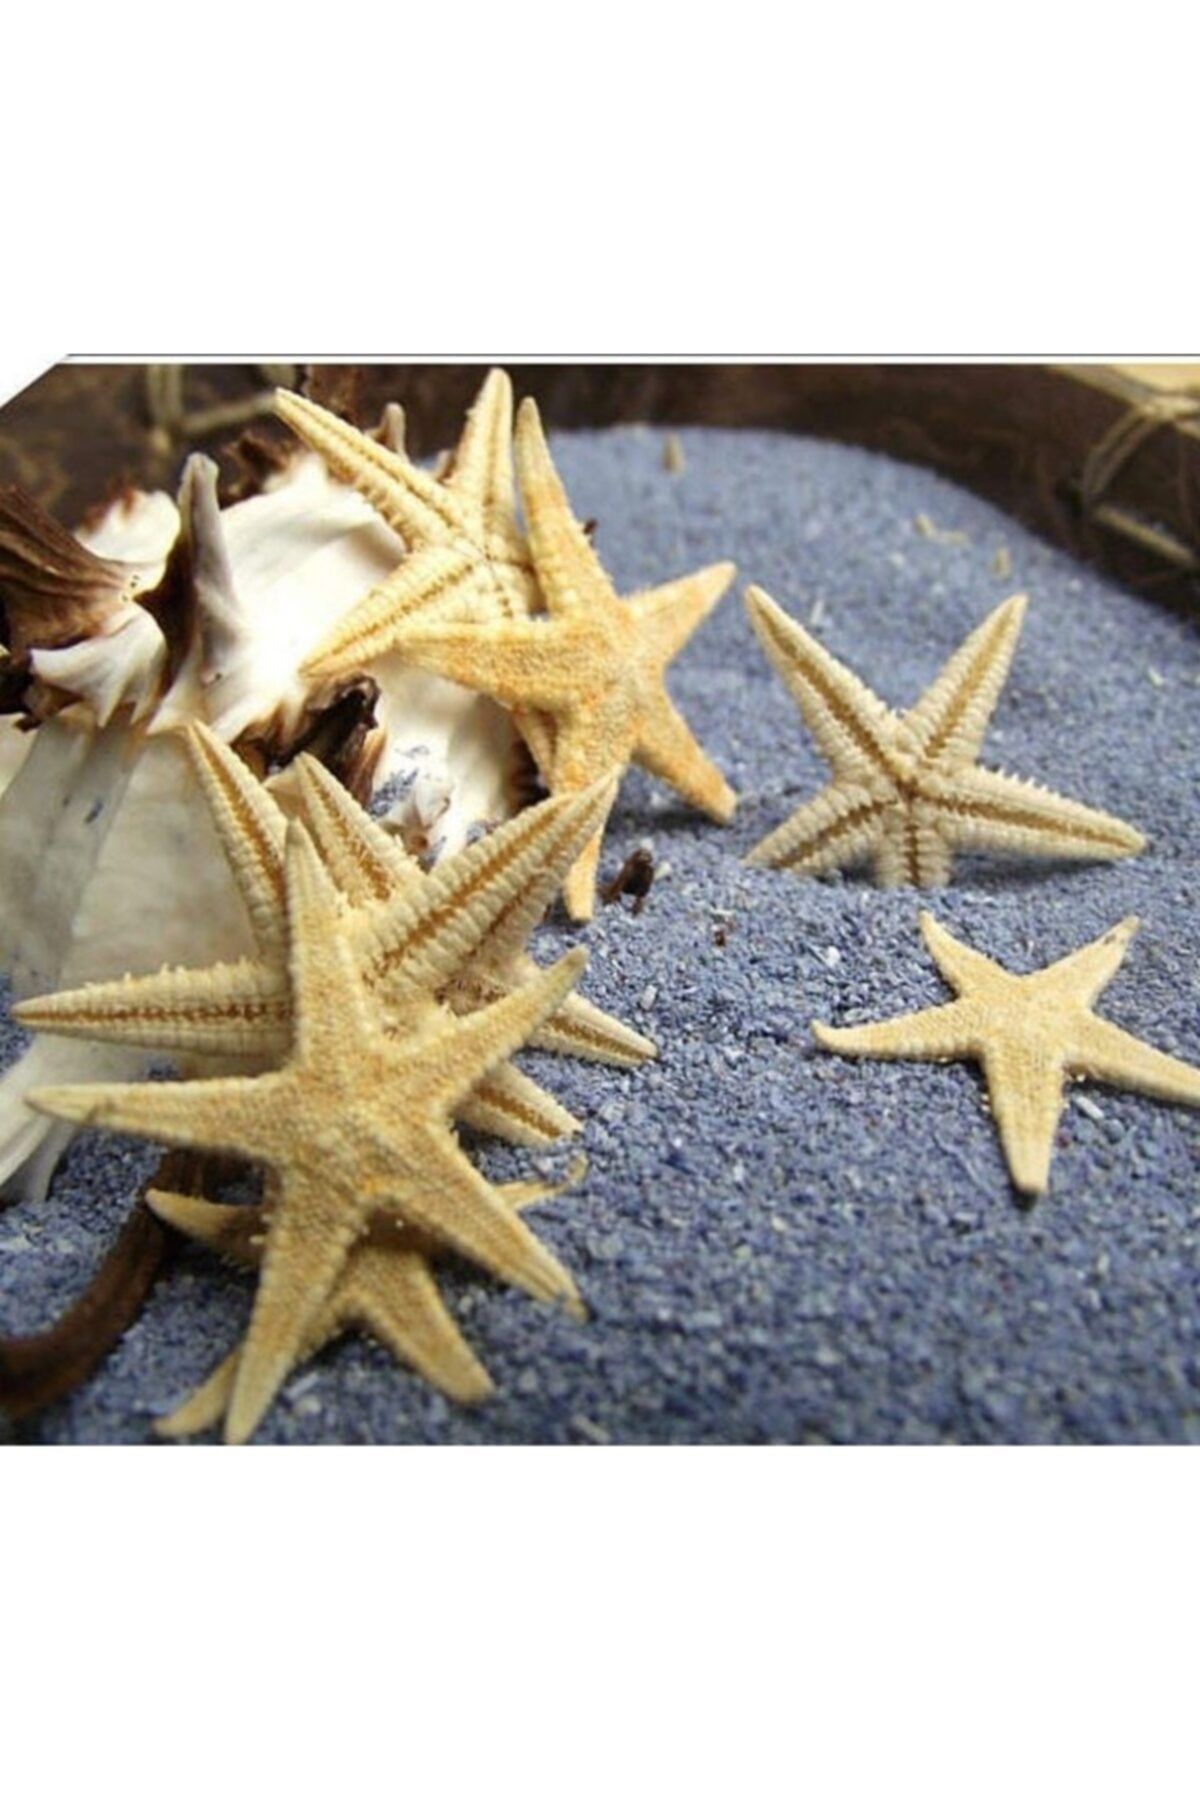 Aker Hediyelik Küçük Deniz Yıldızı 50 Adet 1,5x3,5cm Gerçek Deniz Yıldızları Nikah Şekerleri Süsleme Malzemesi